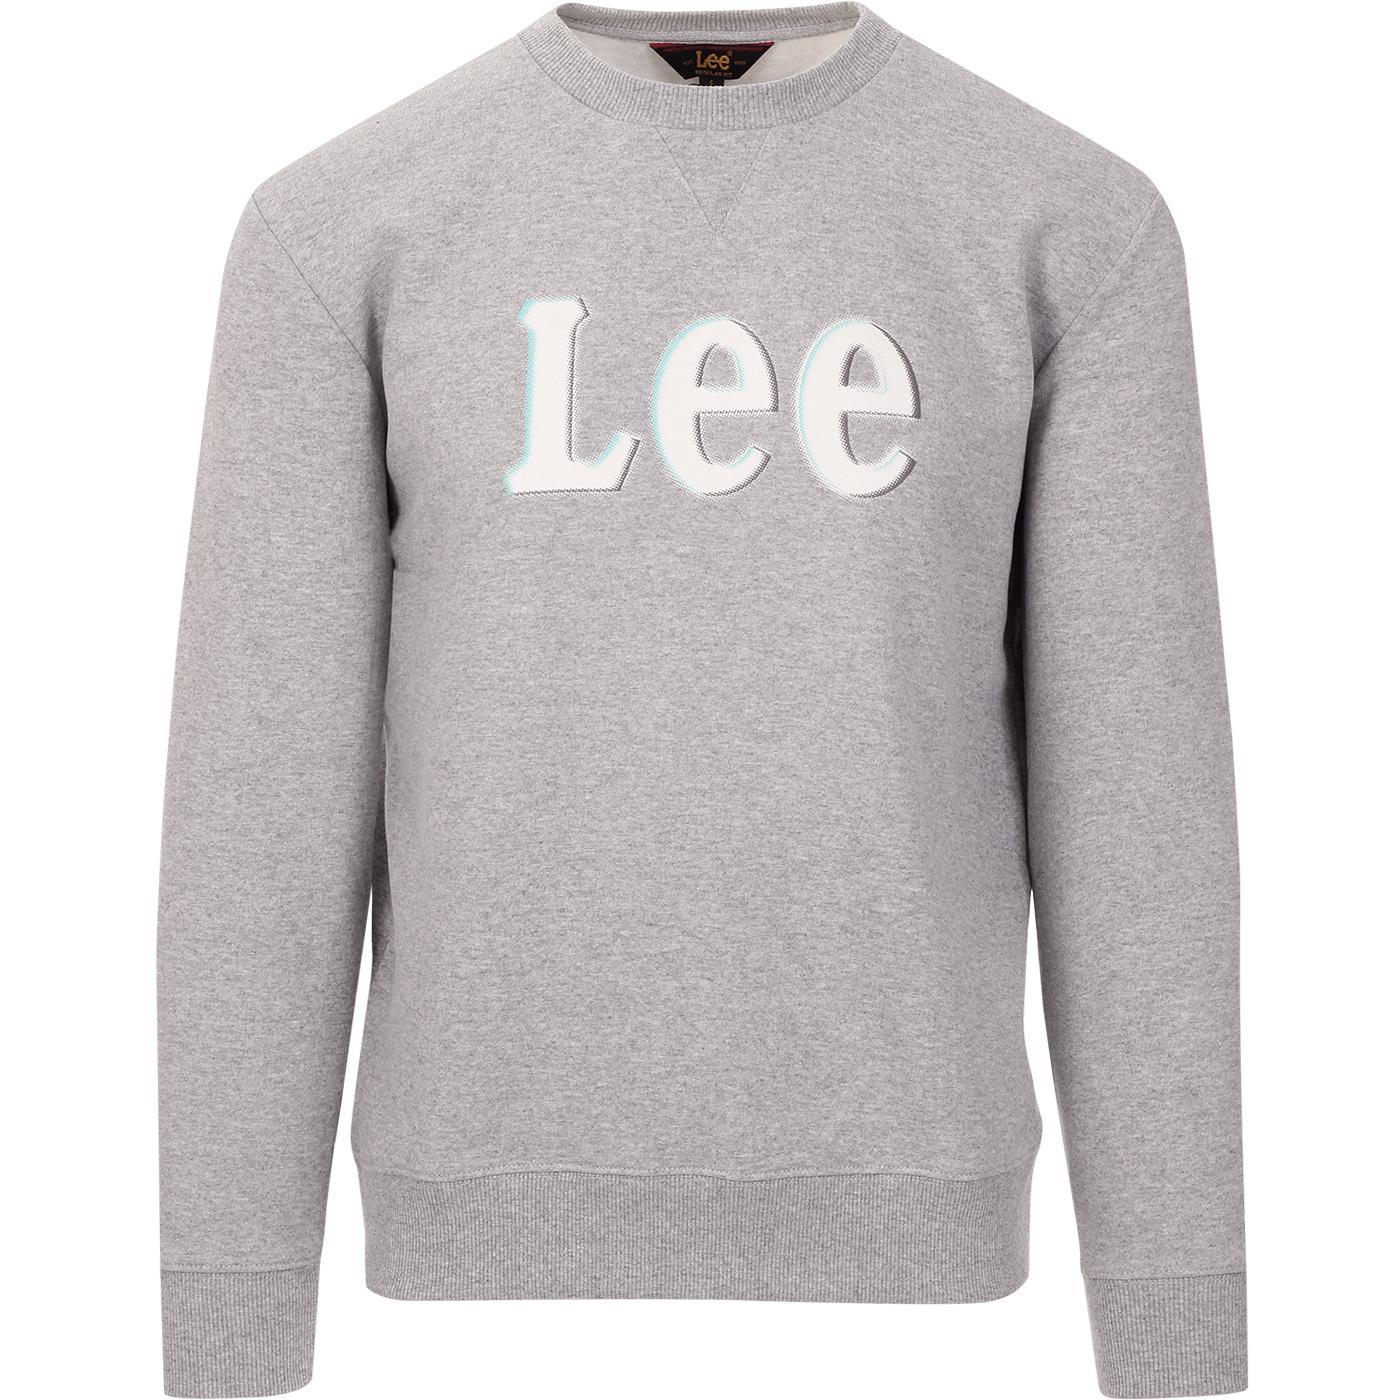 LEE JEANS Retro Crewneck Logo Sweatshirt in Grey